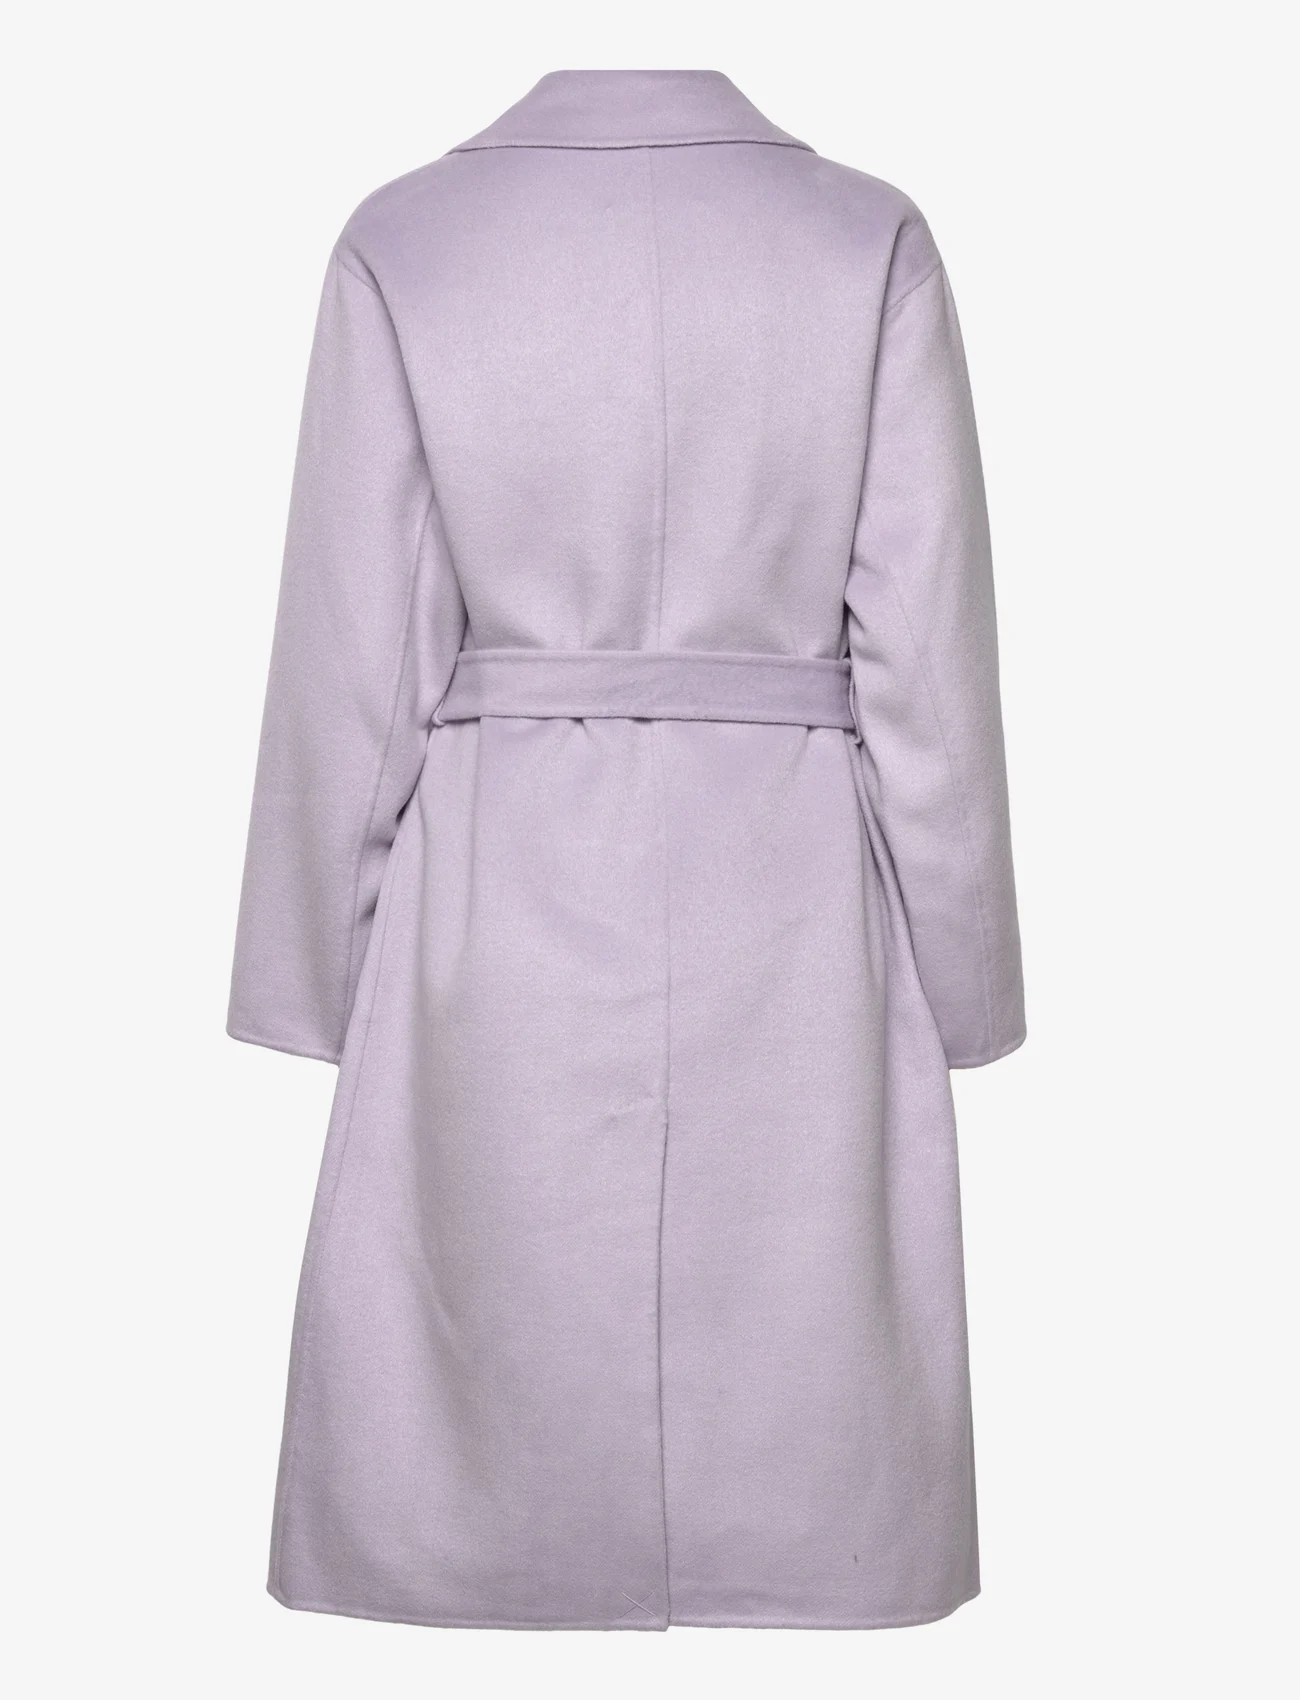 Minus - Chantal coat - vinterfrakker - light lavender - 1